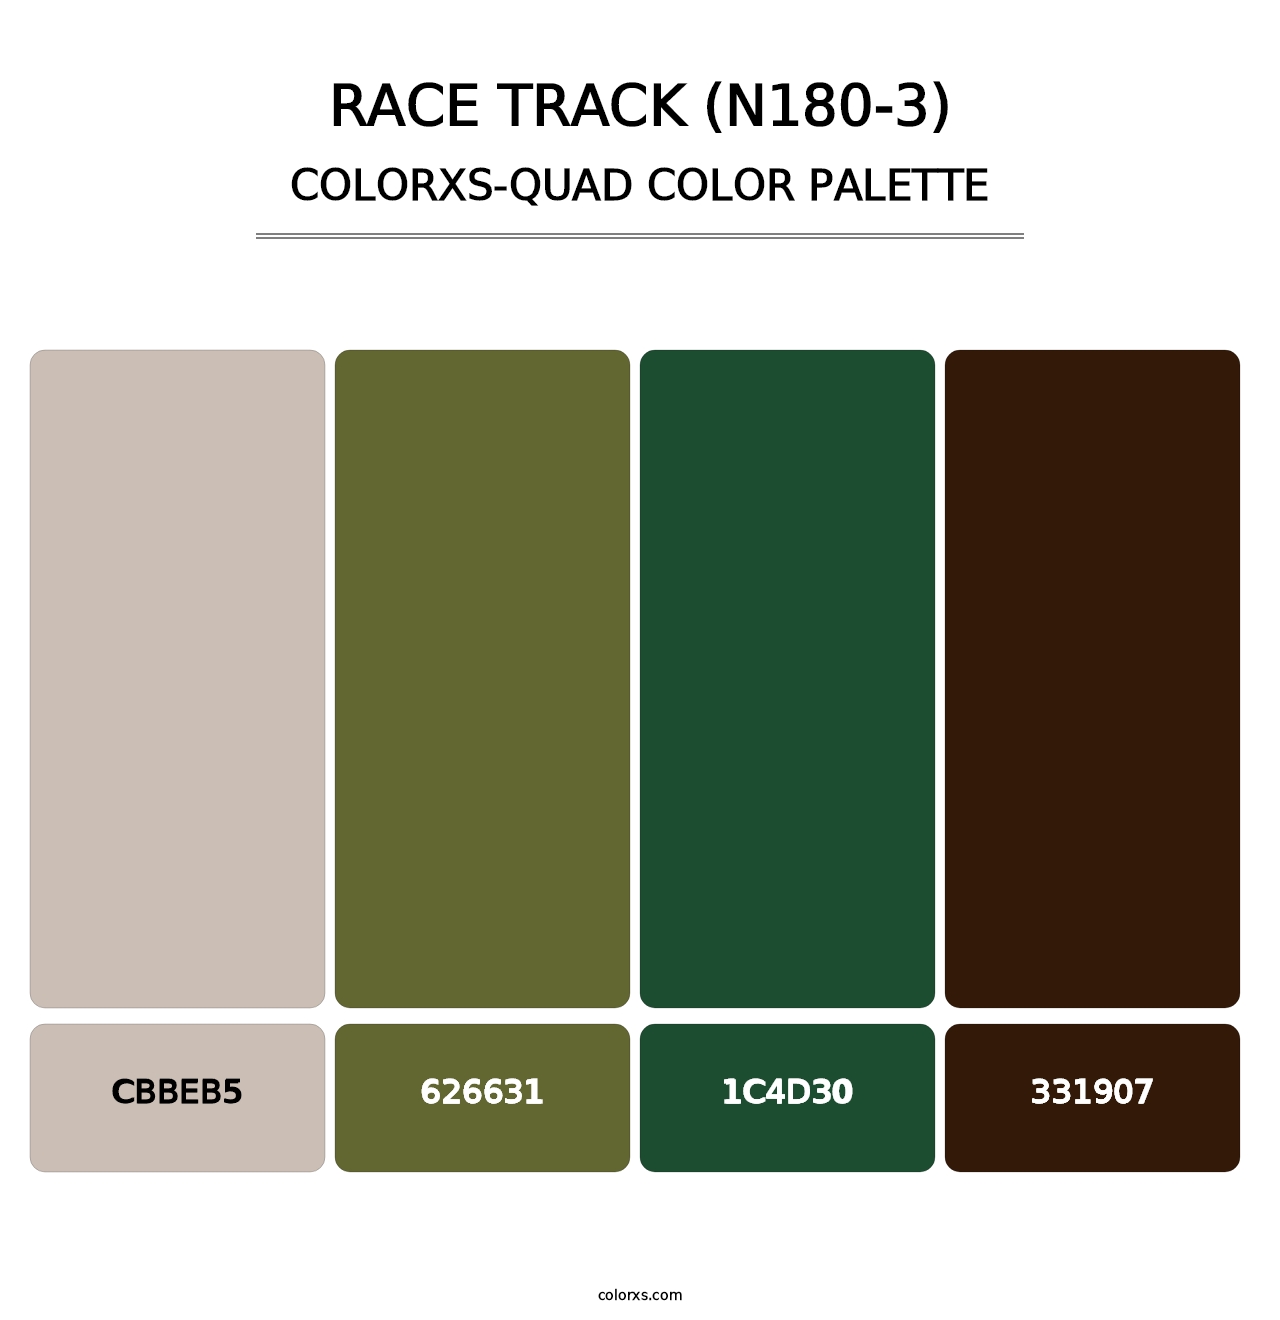 Race Track (N180-3) - Colorxs Quad Palette